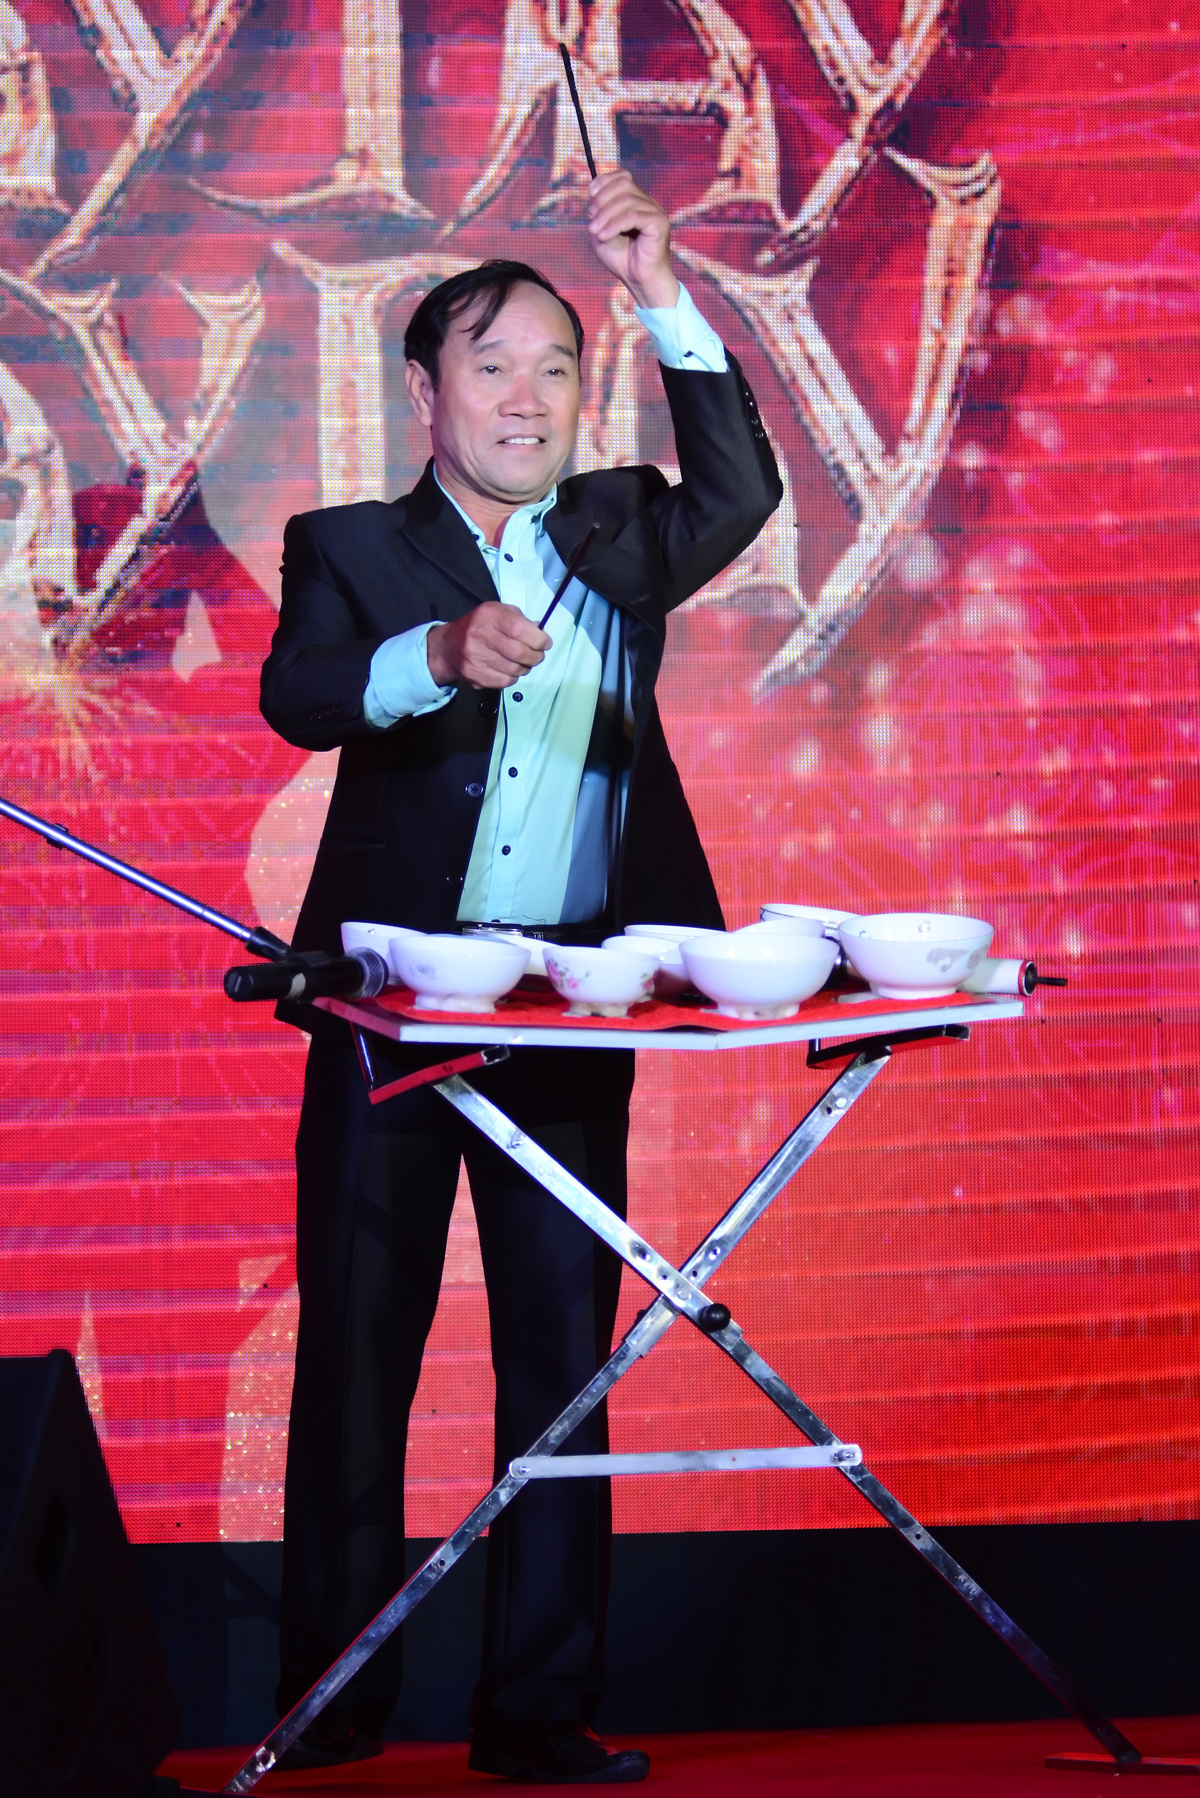 <p> Nghệ sĩ Mai Đình Tới gửi tặng người FPT ca khúc "Mùa xuân trên thành phố Hồ Chí Minh" chỉ với những chiếc chén bát và đũa. </p>